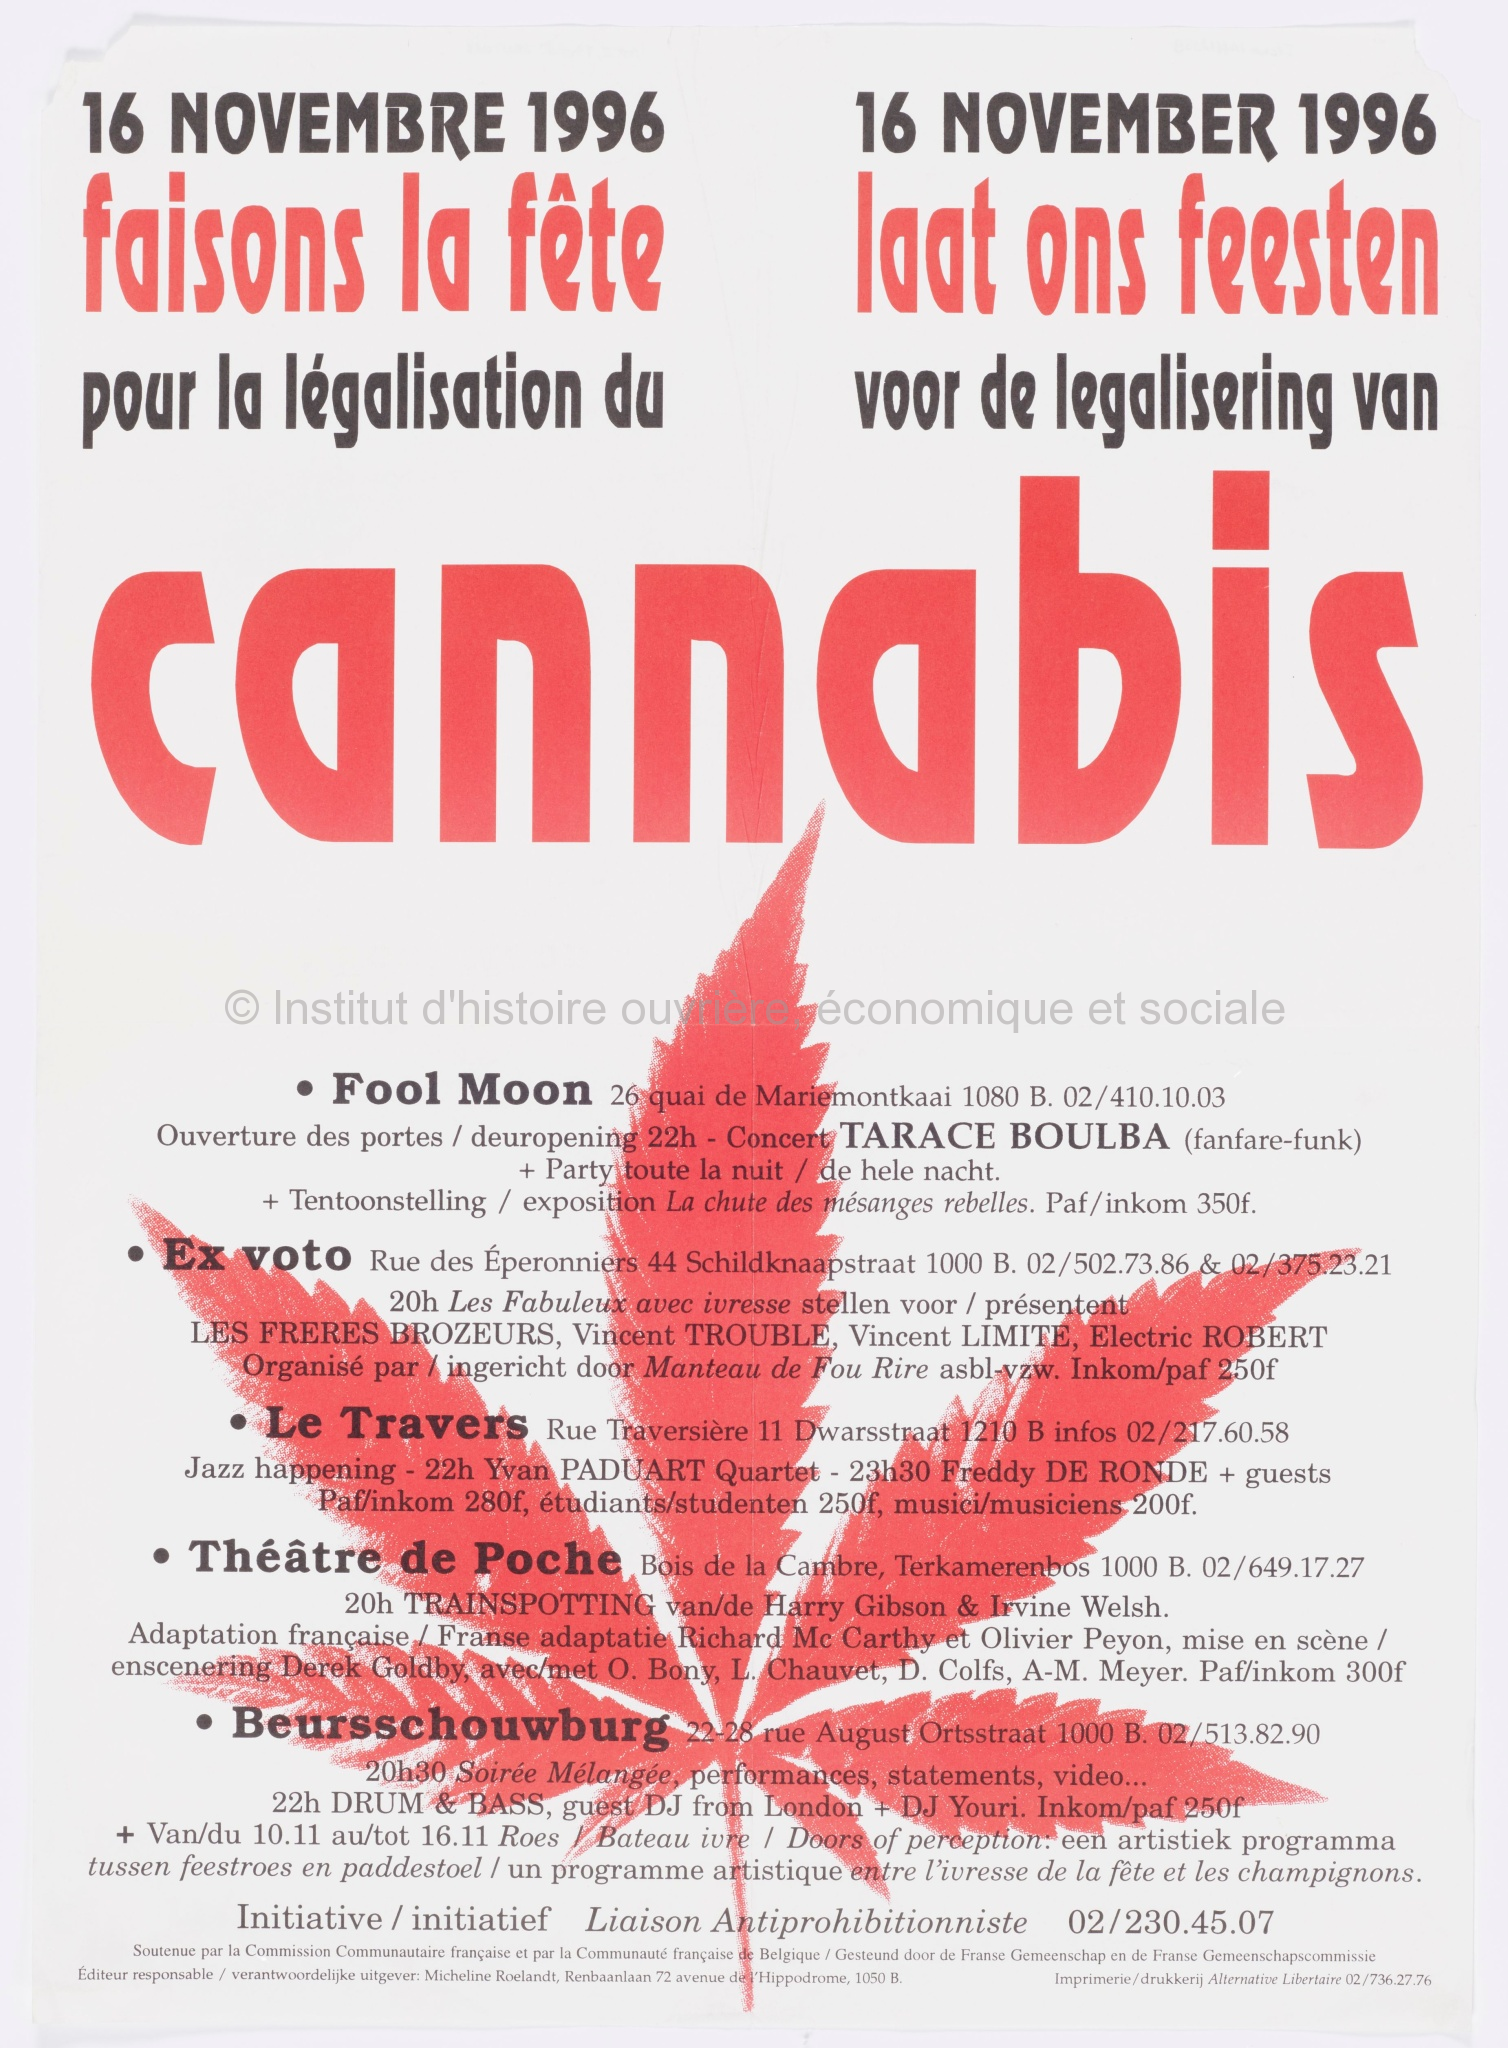 16 novembre 1996, faisons la fête pour la légalisation du cannabis = 16 november 1996, laat ons feesten voor de legalisering van cannabis